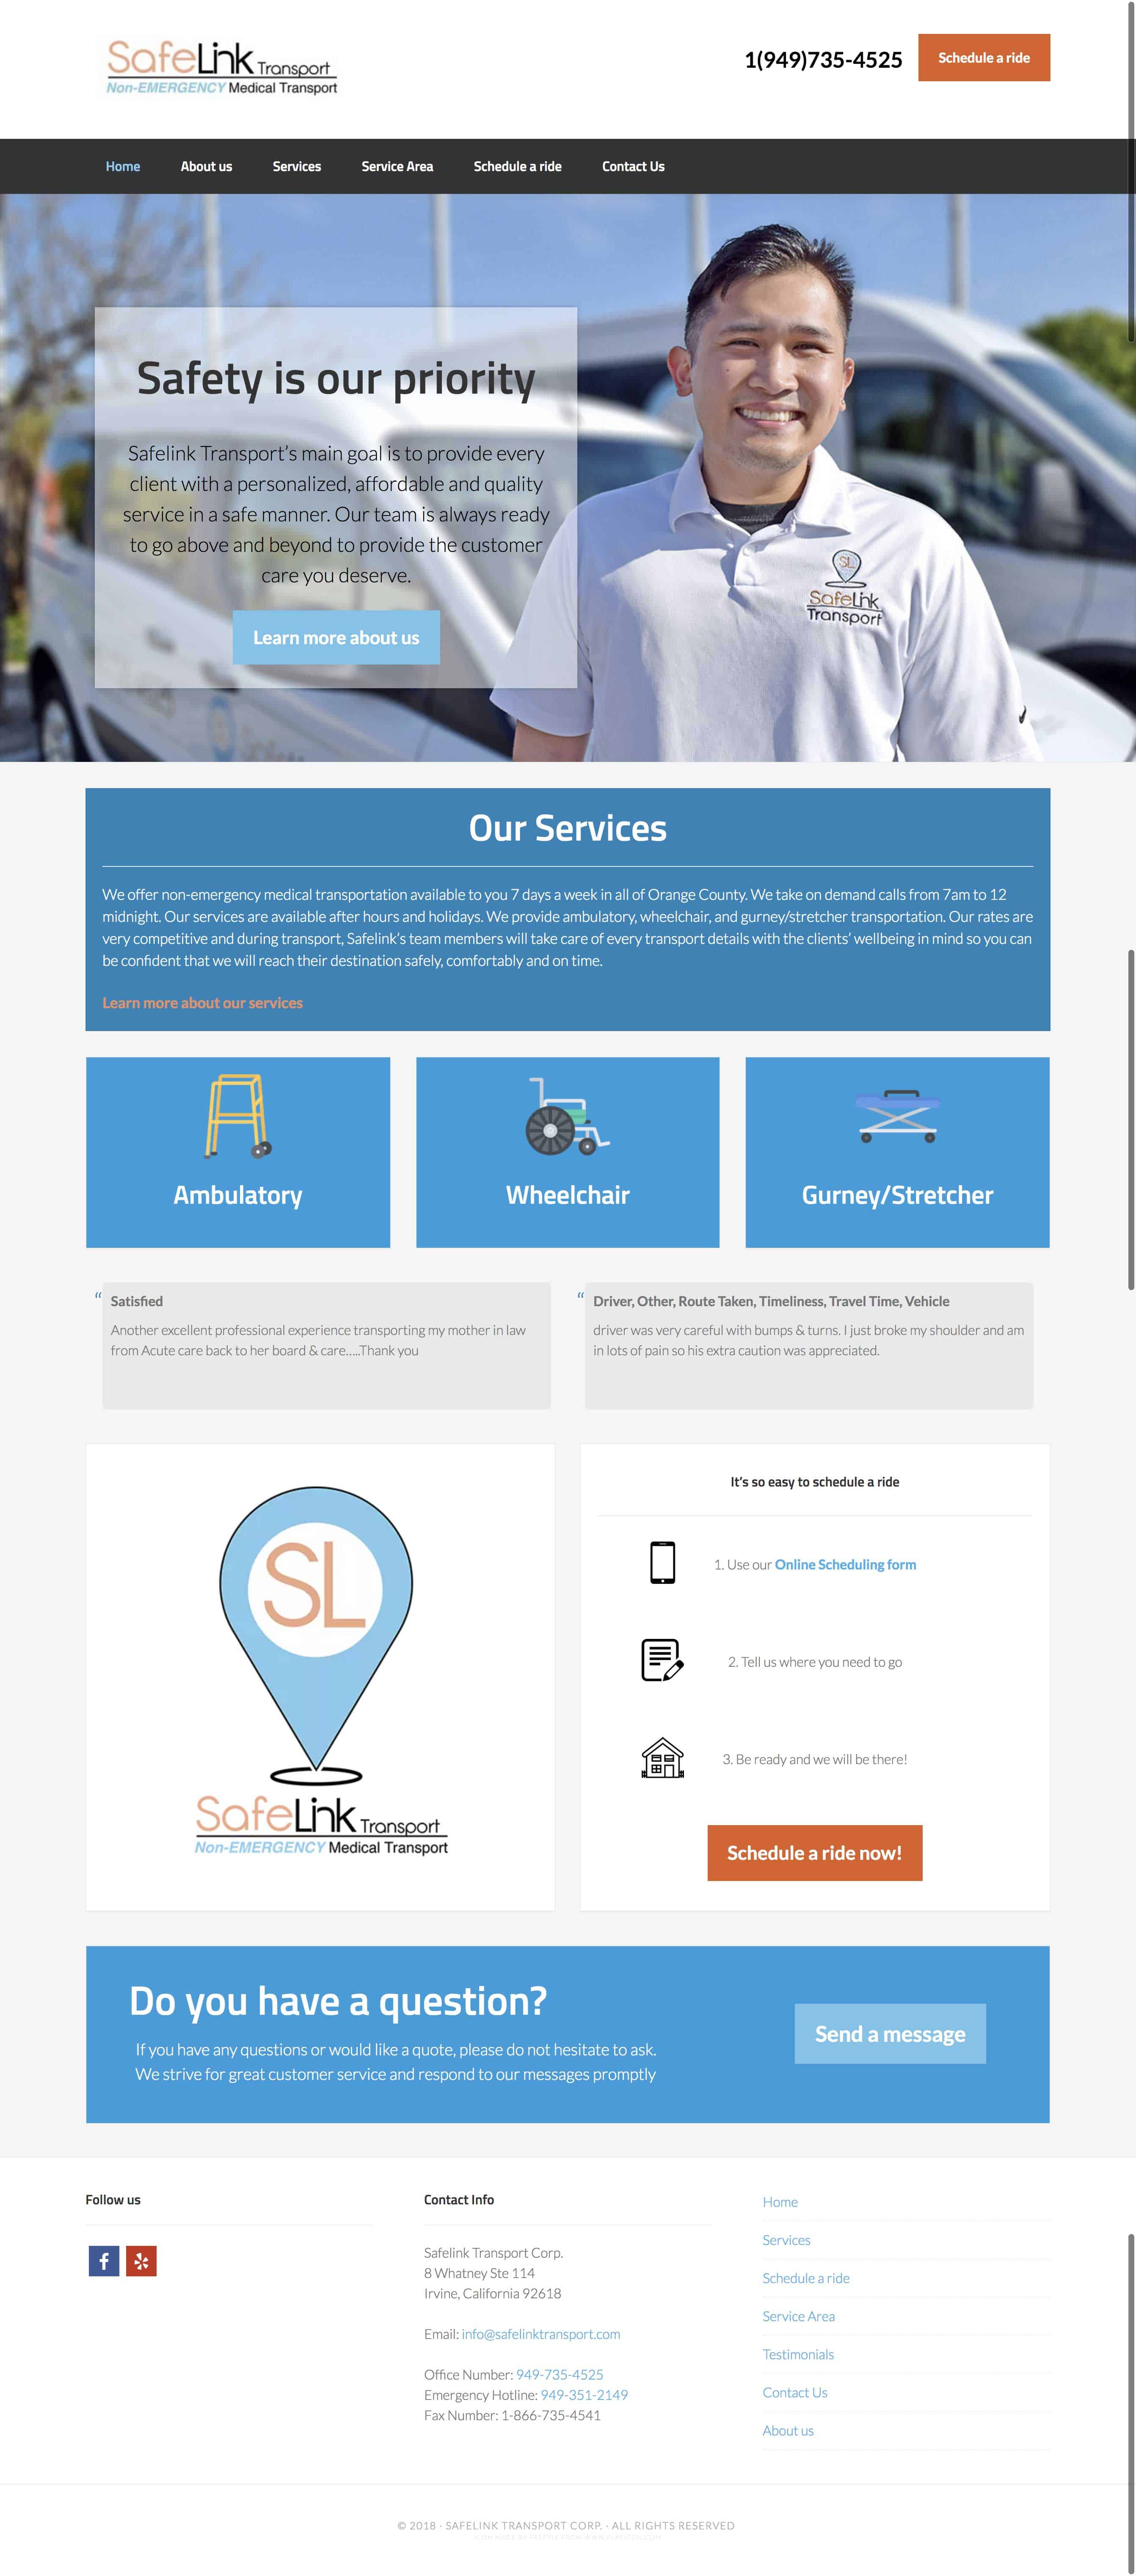 Safelink Transport Screen shot WordPress website by Imfranky Web Design in Las Vegas